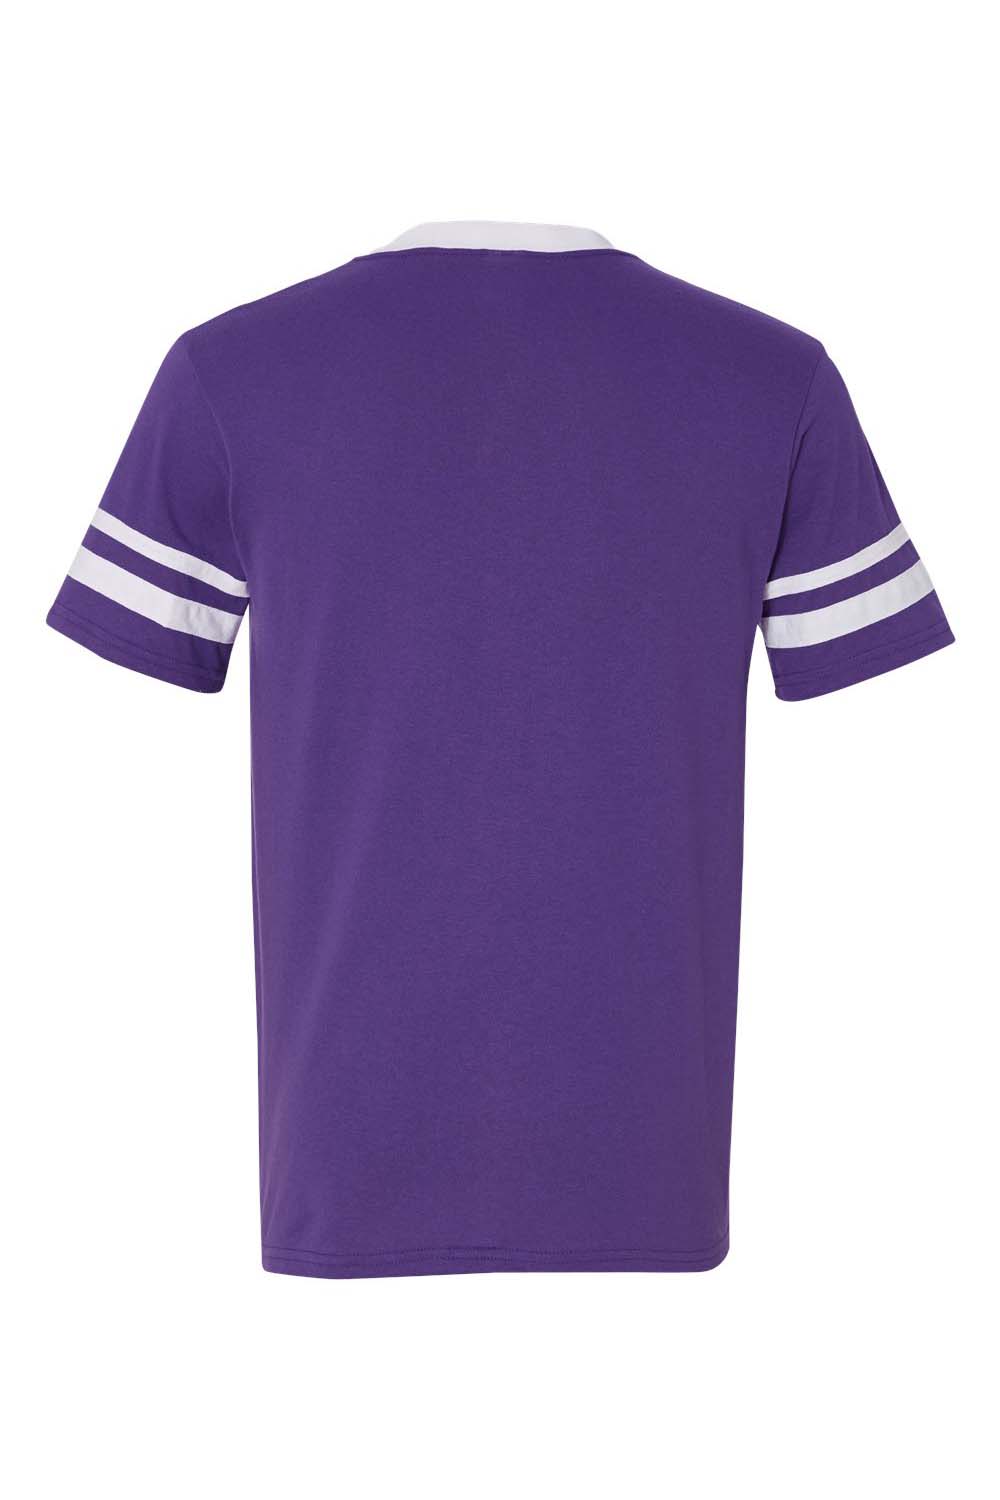 Augusta Sportswear 360 Mens Short Sleeve V-Neck T-Shirt Purple/White Model Flat Back